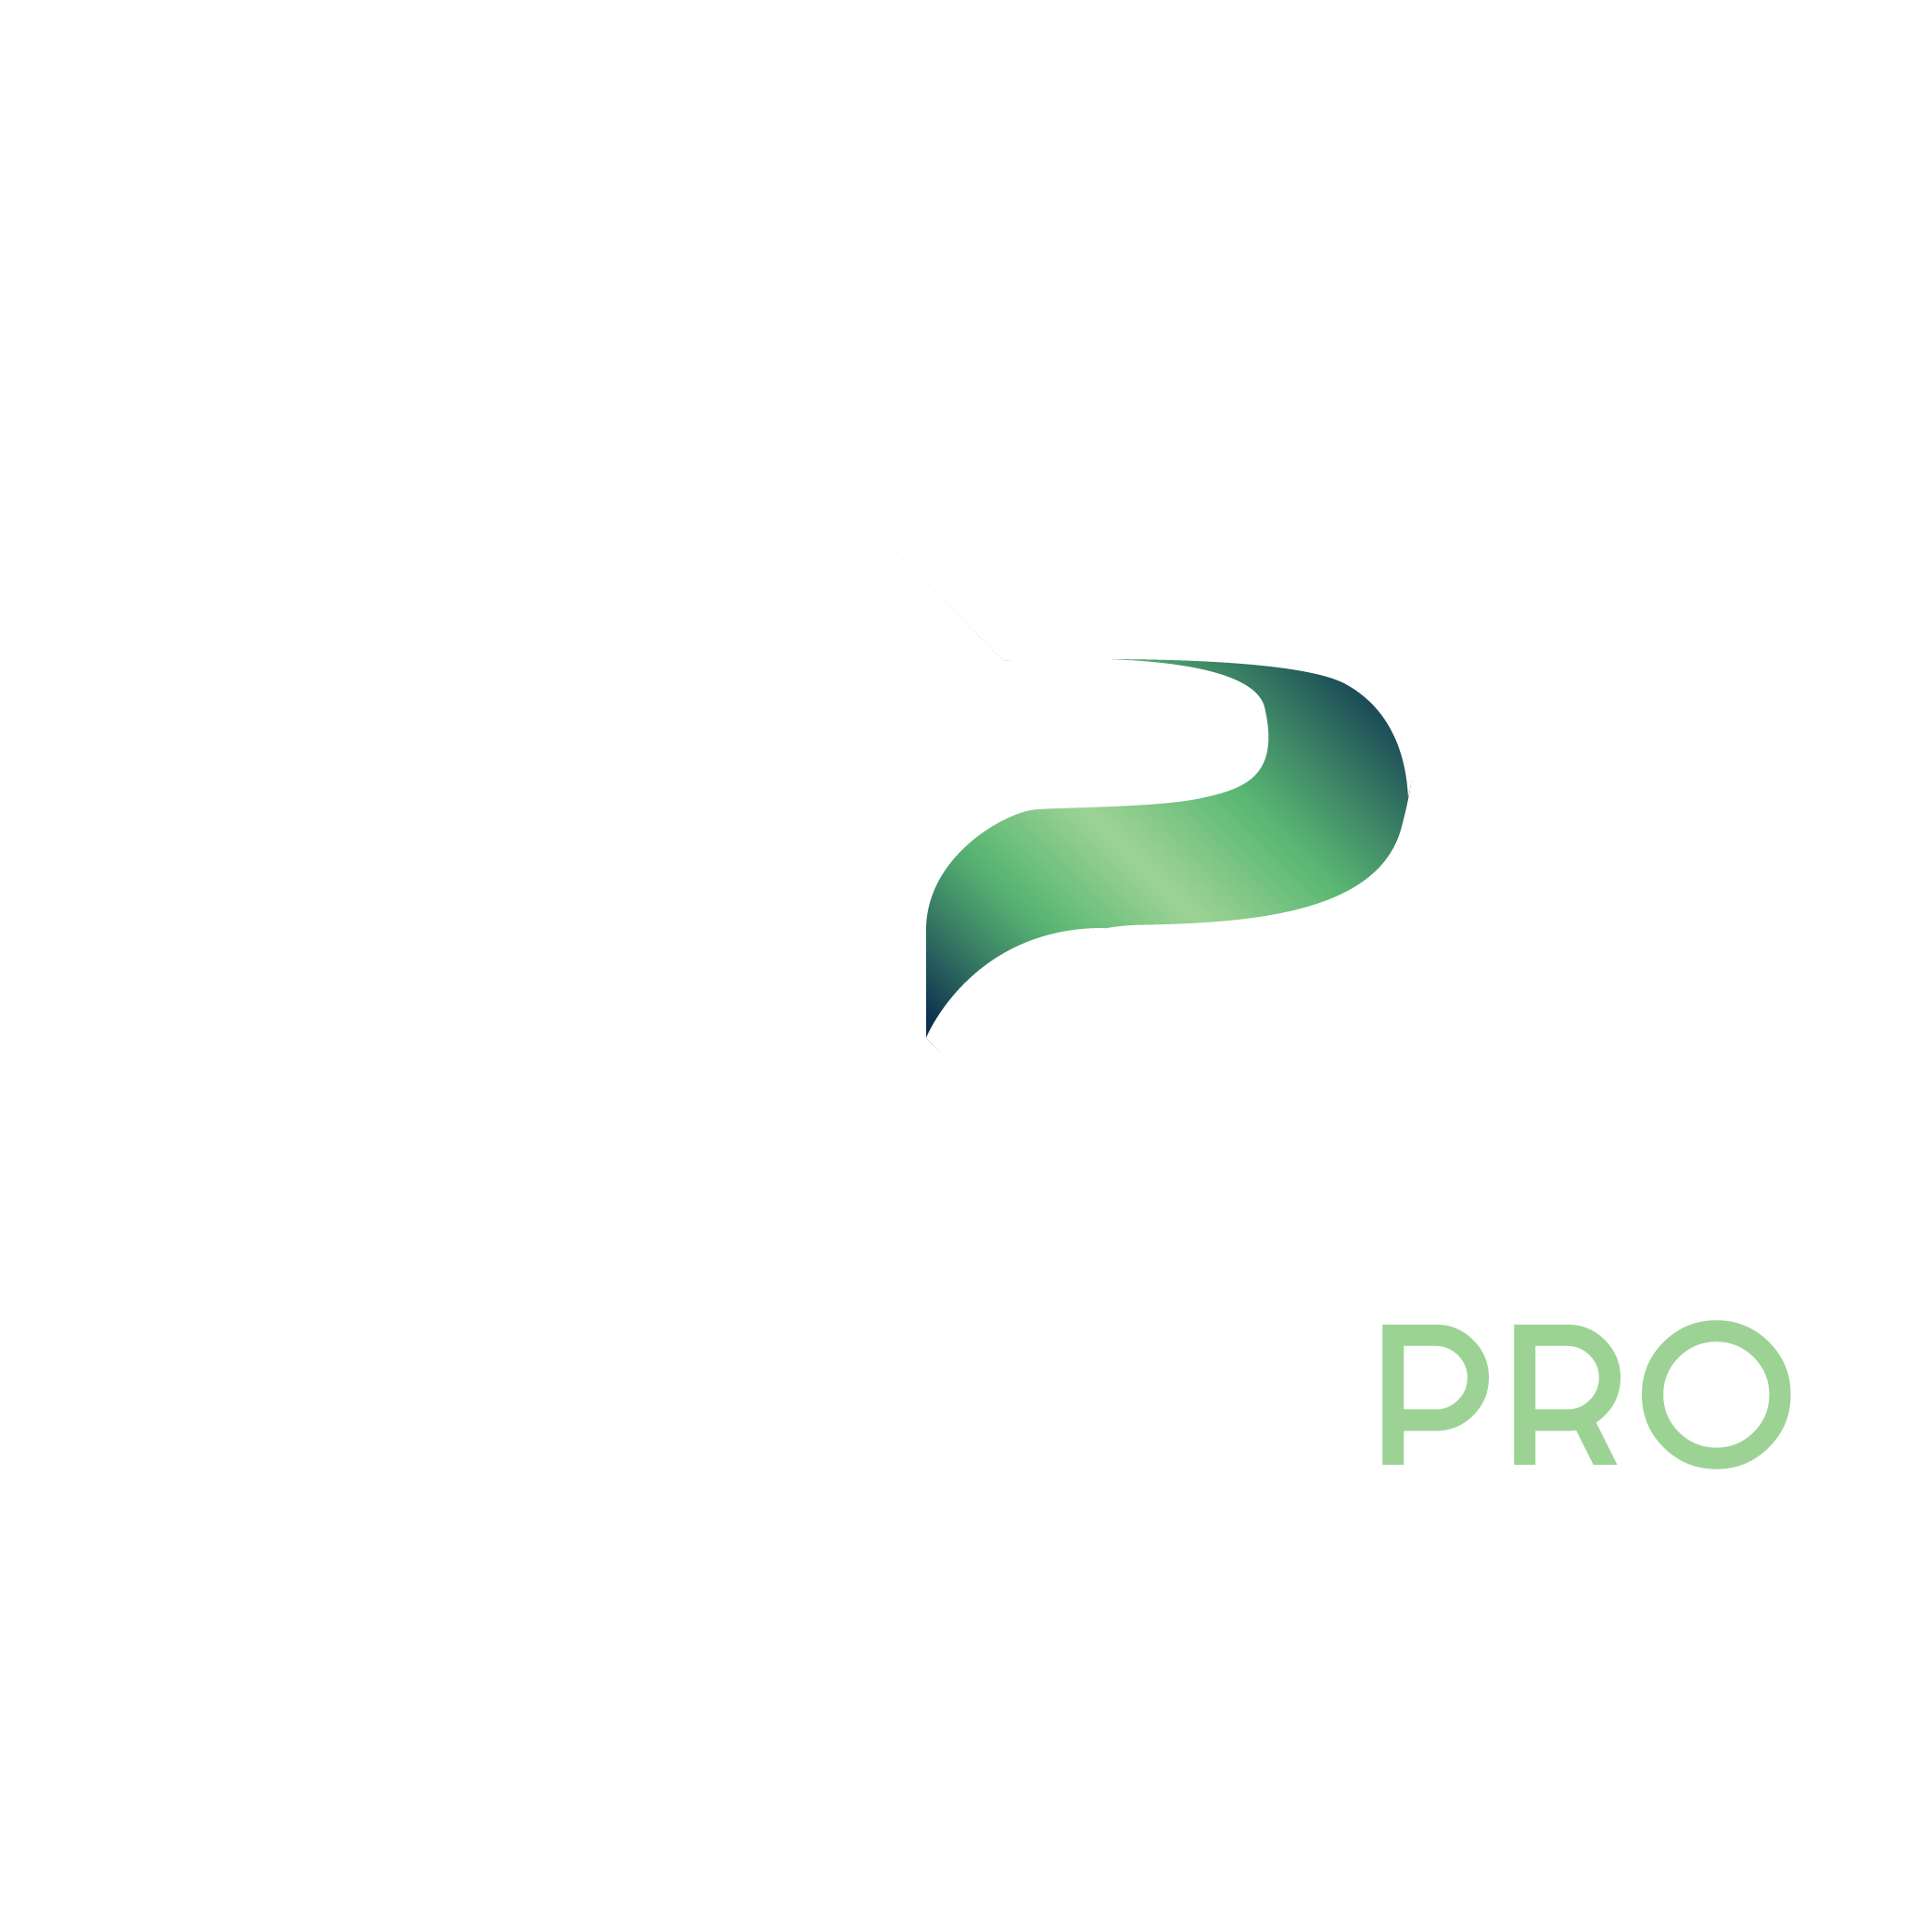 Carrières Pro